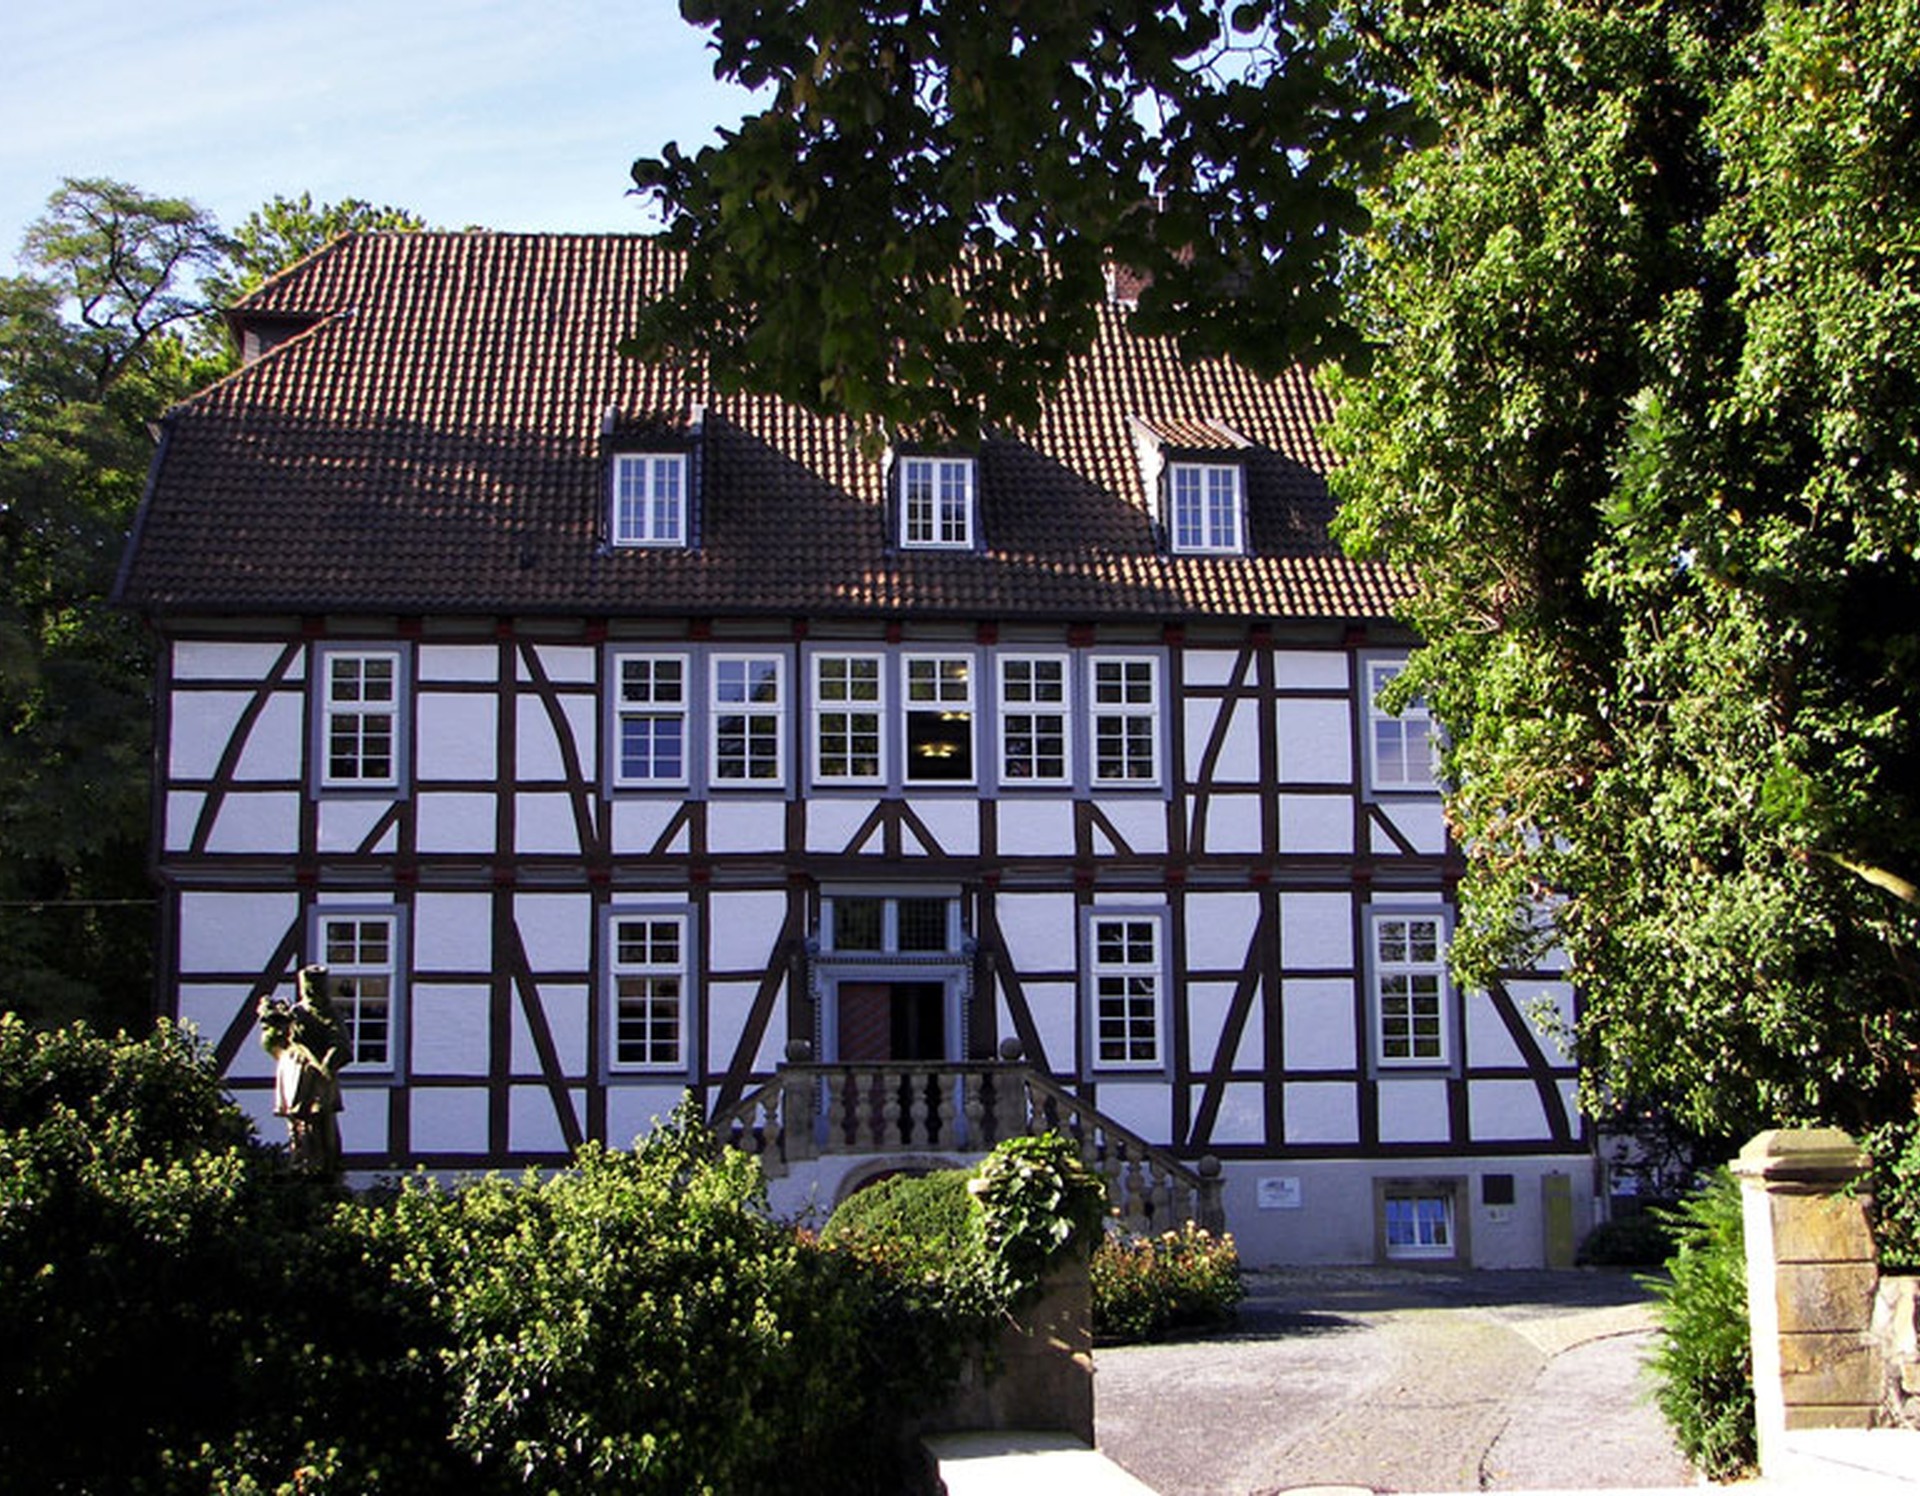 Frontansicht des Mallinckrodthofs in Borchen. Dieses Fachwerkhaus wurde auf den Fundamenten eines Vorgängerbaus errichtet